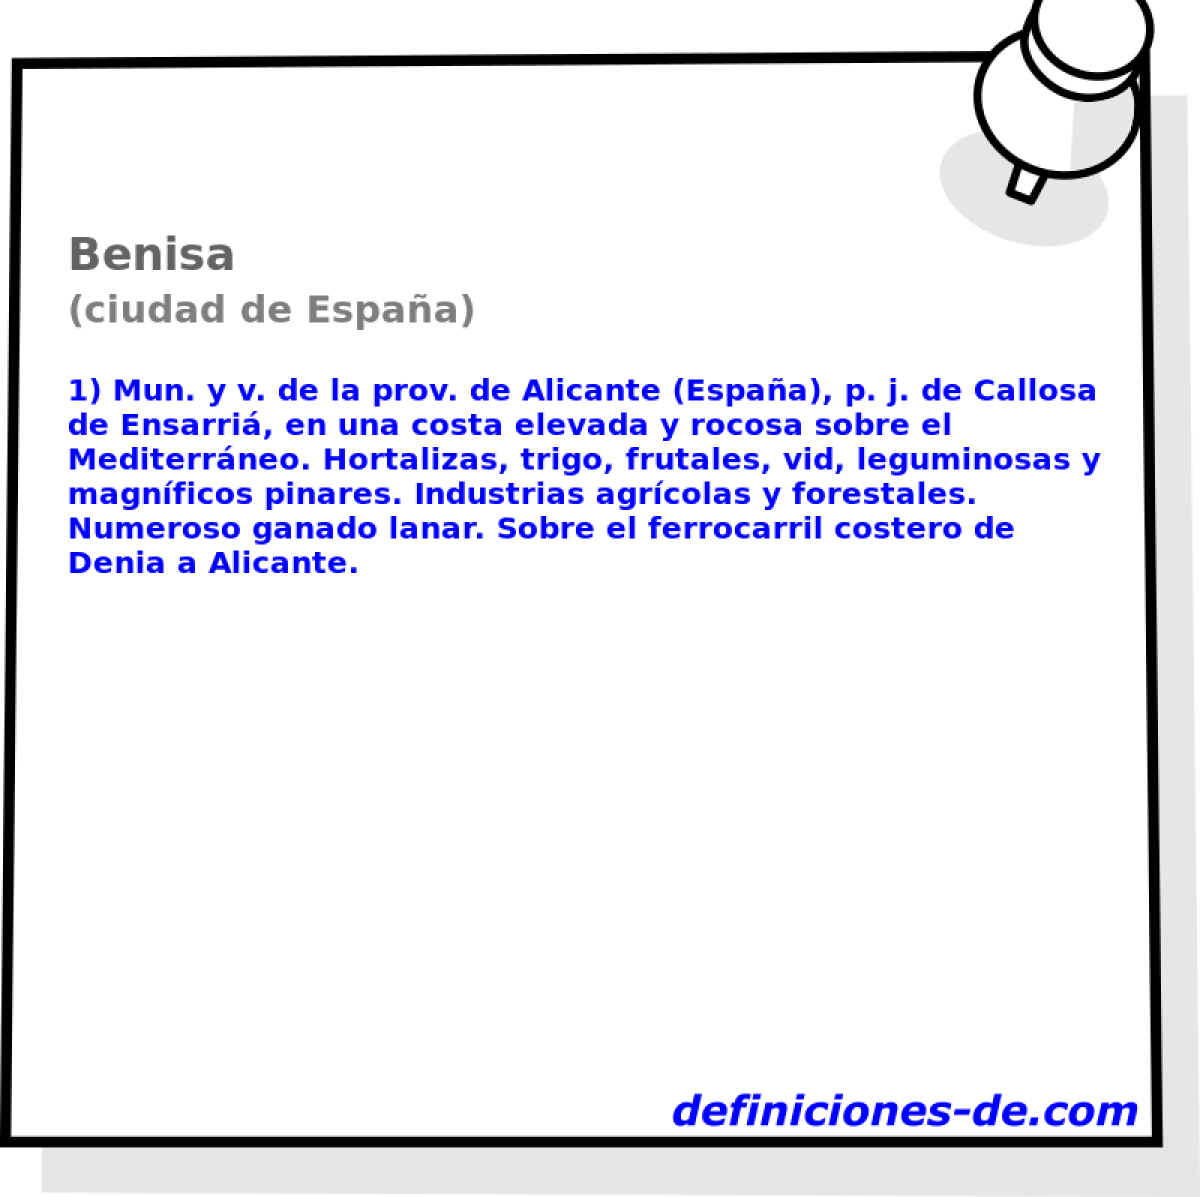 Benisa (ciudad de Espaa)